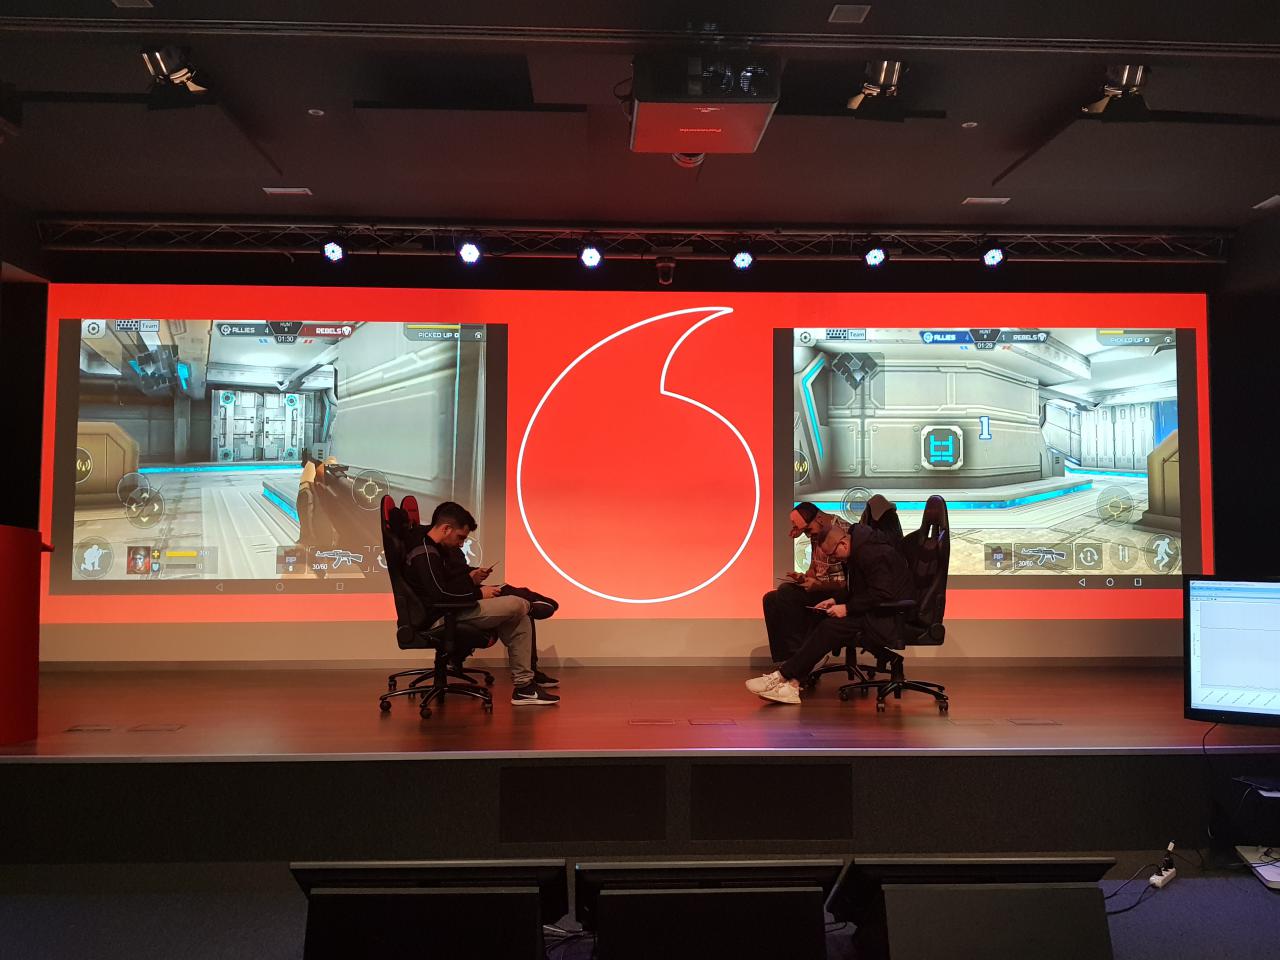 Vodafone tantea la 5G con una demo de gaming y mínima latencia